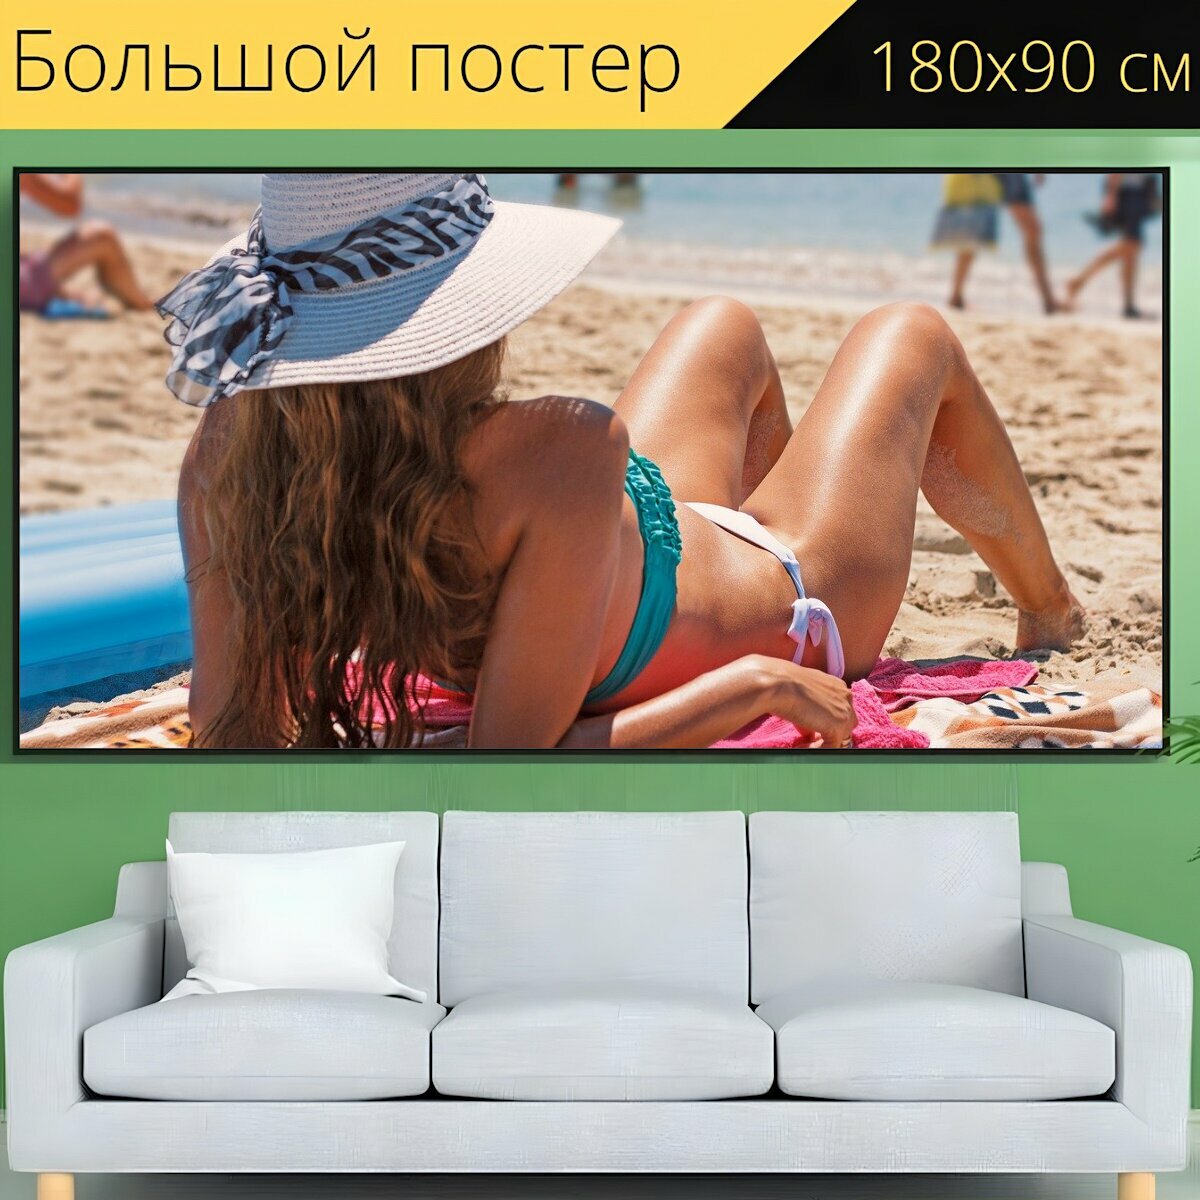 Большой постер "Бикини, солнечные ванны, пляж" 180 x 90 см. для интерьера